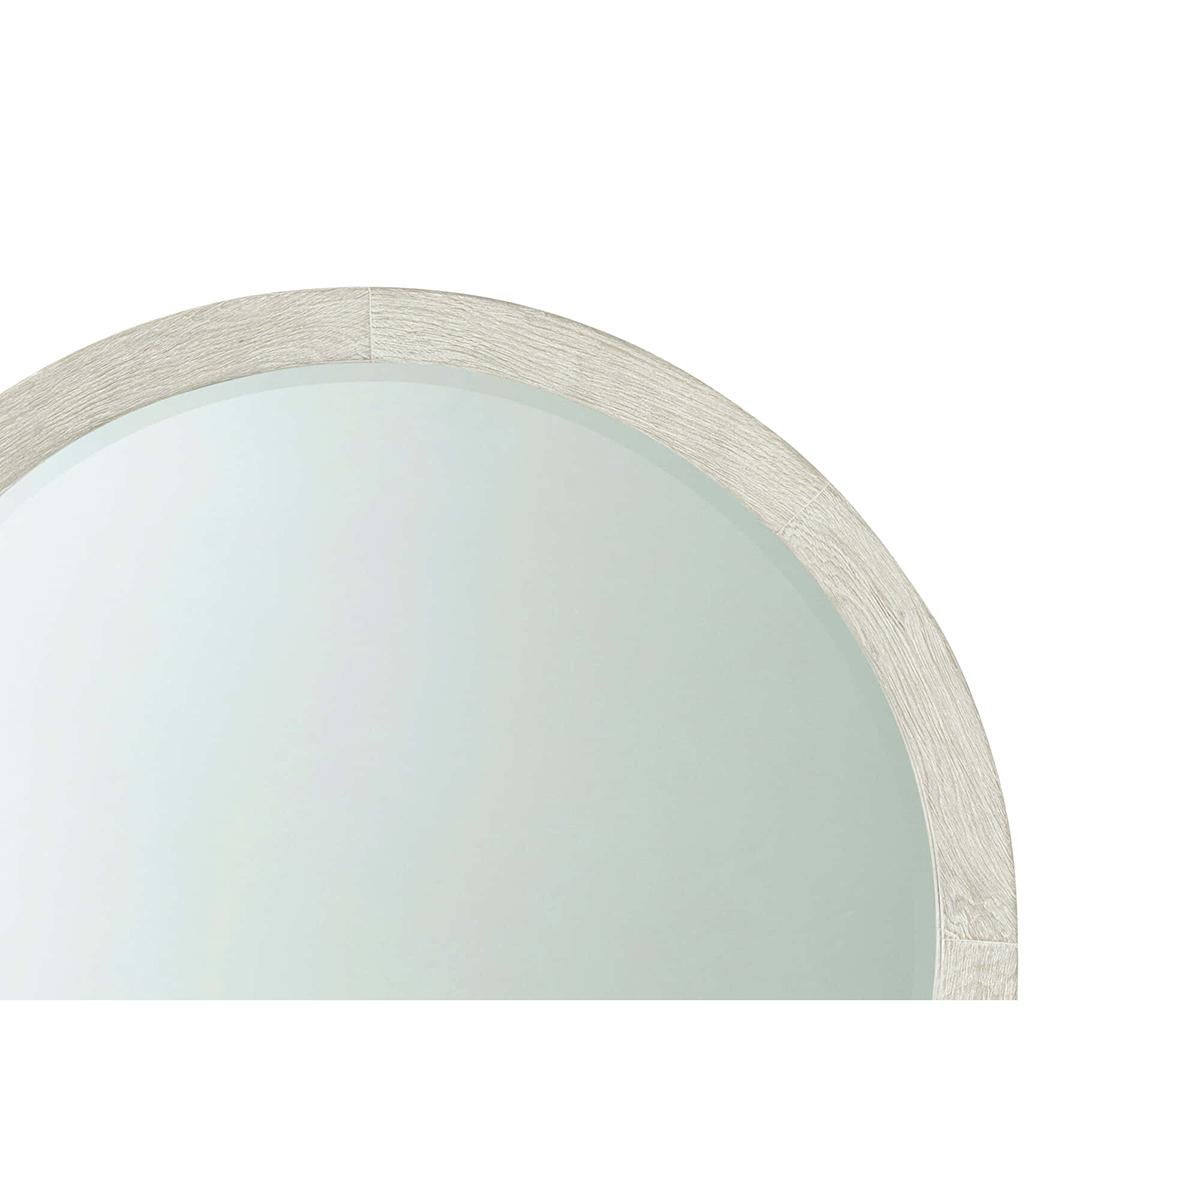 Moderner runder Küstenspiegel, Inspiriert von einem organisch-modernen Design, ist dieser runde Spiegel aus drahtgebürstetem, gebranntem Kiefernholz in unserem neuen Sea Salt-Finish gefertigt und bietet eine frische Interpretation einer klassischen